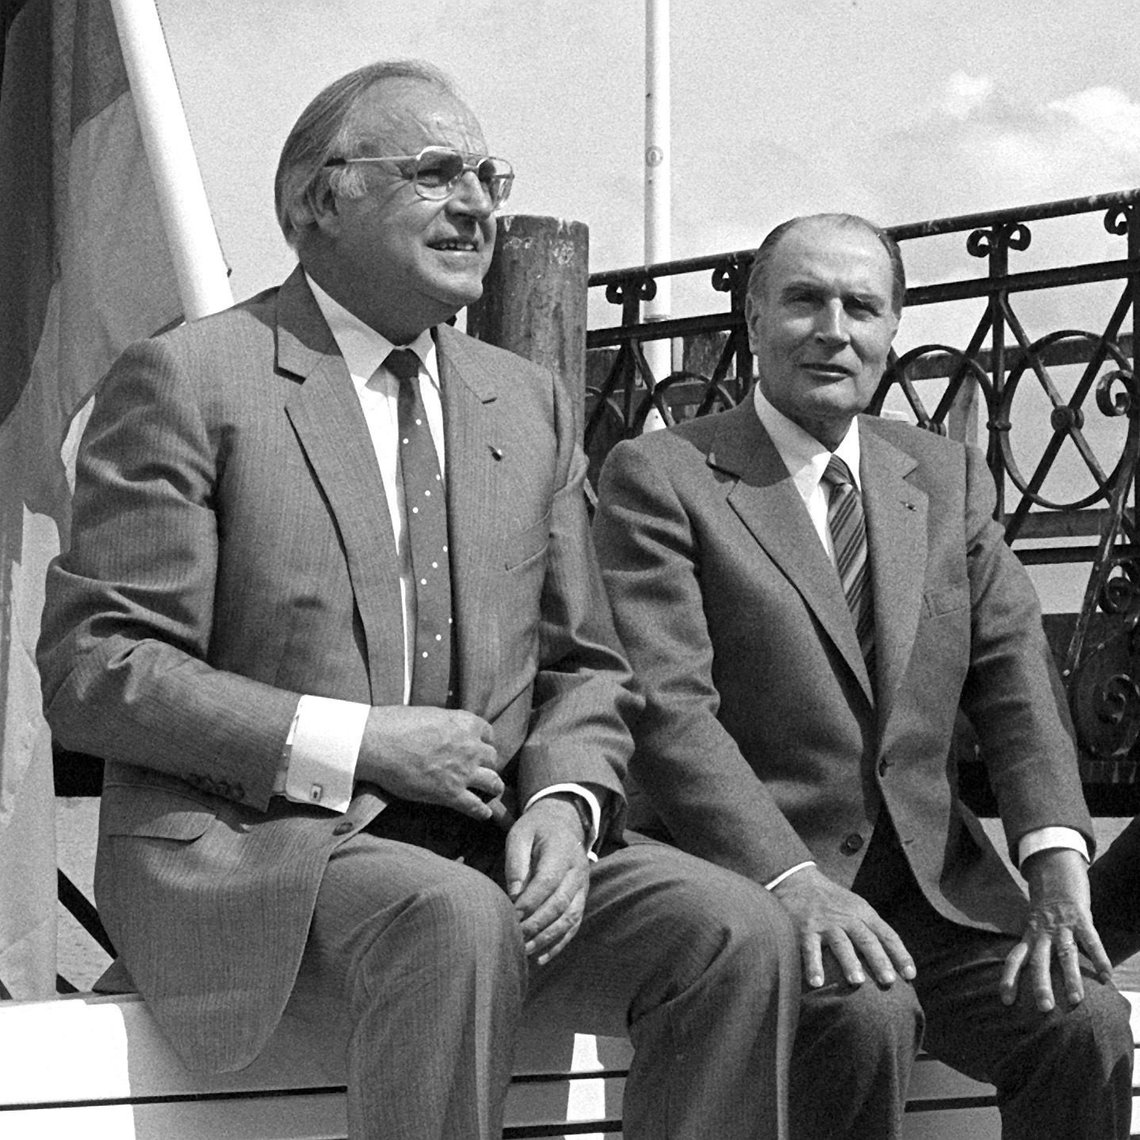 Schwarz-Weiss-Aufnahme von Helmut Kohl und François Mitterrand am Bodensee